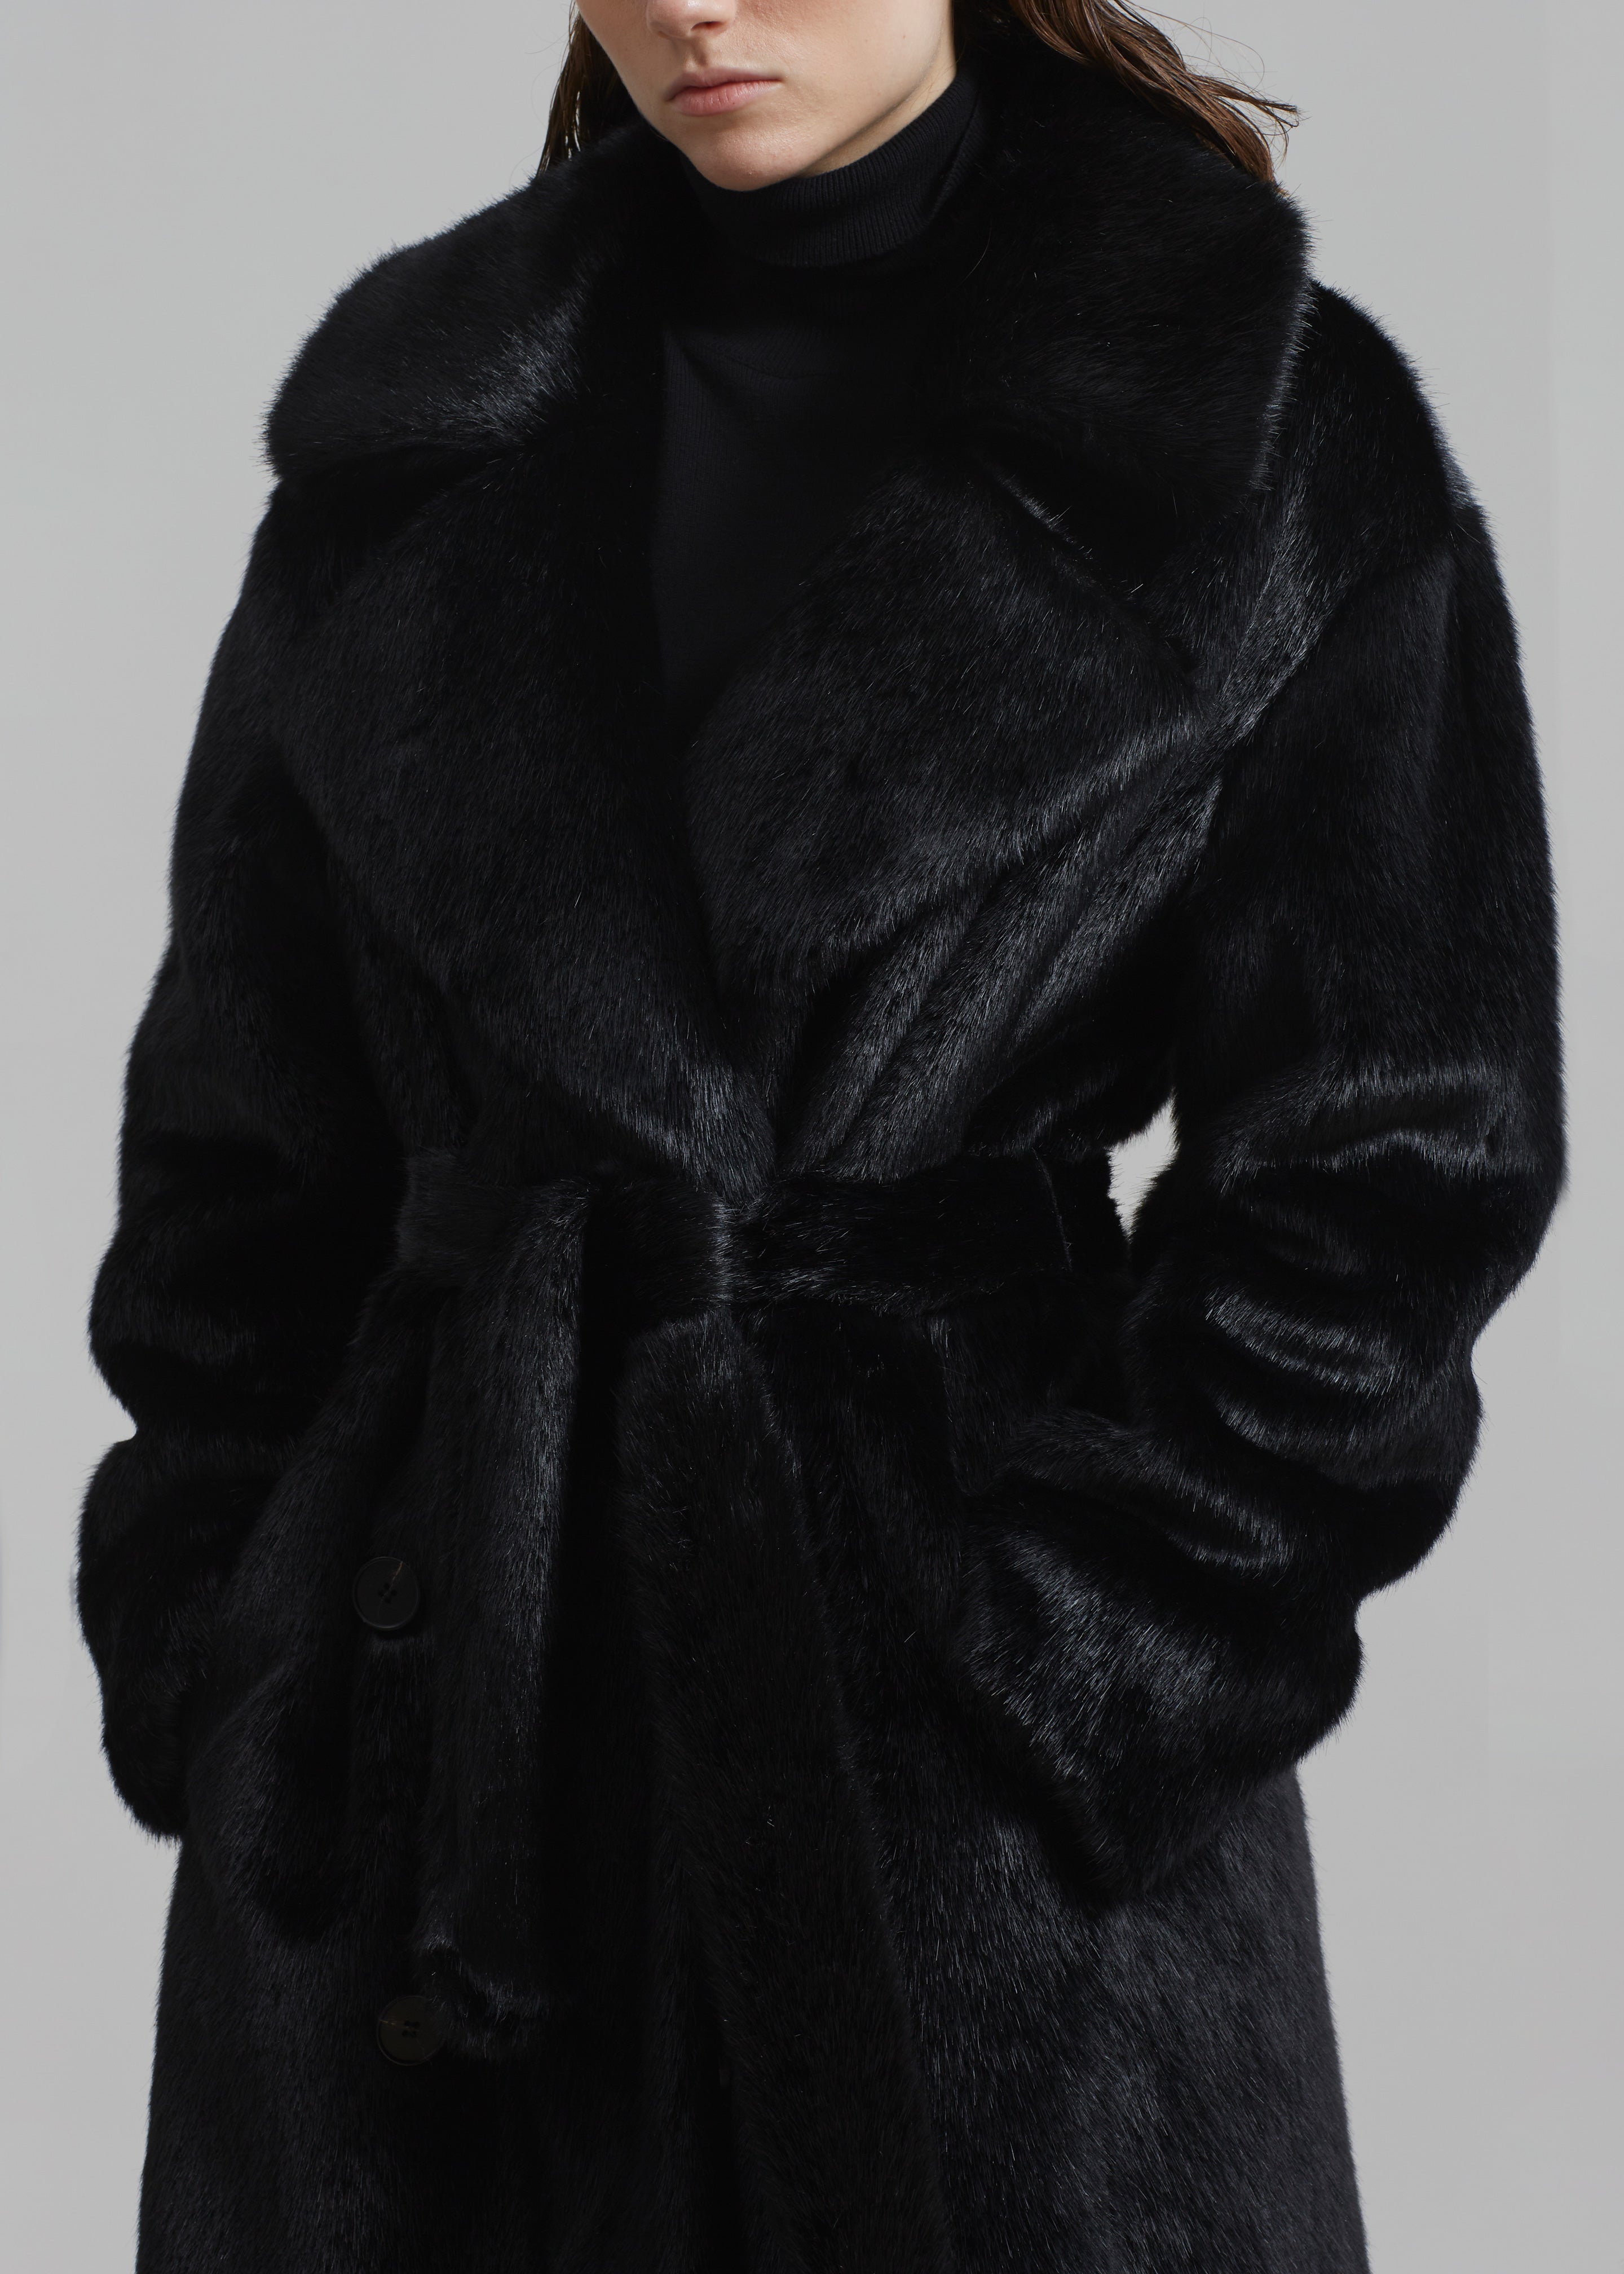 Joni Faux Fur Coat - Black - 4